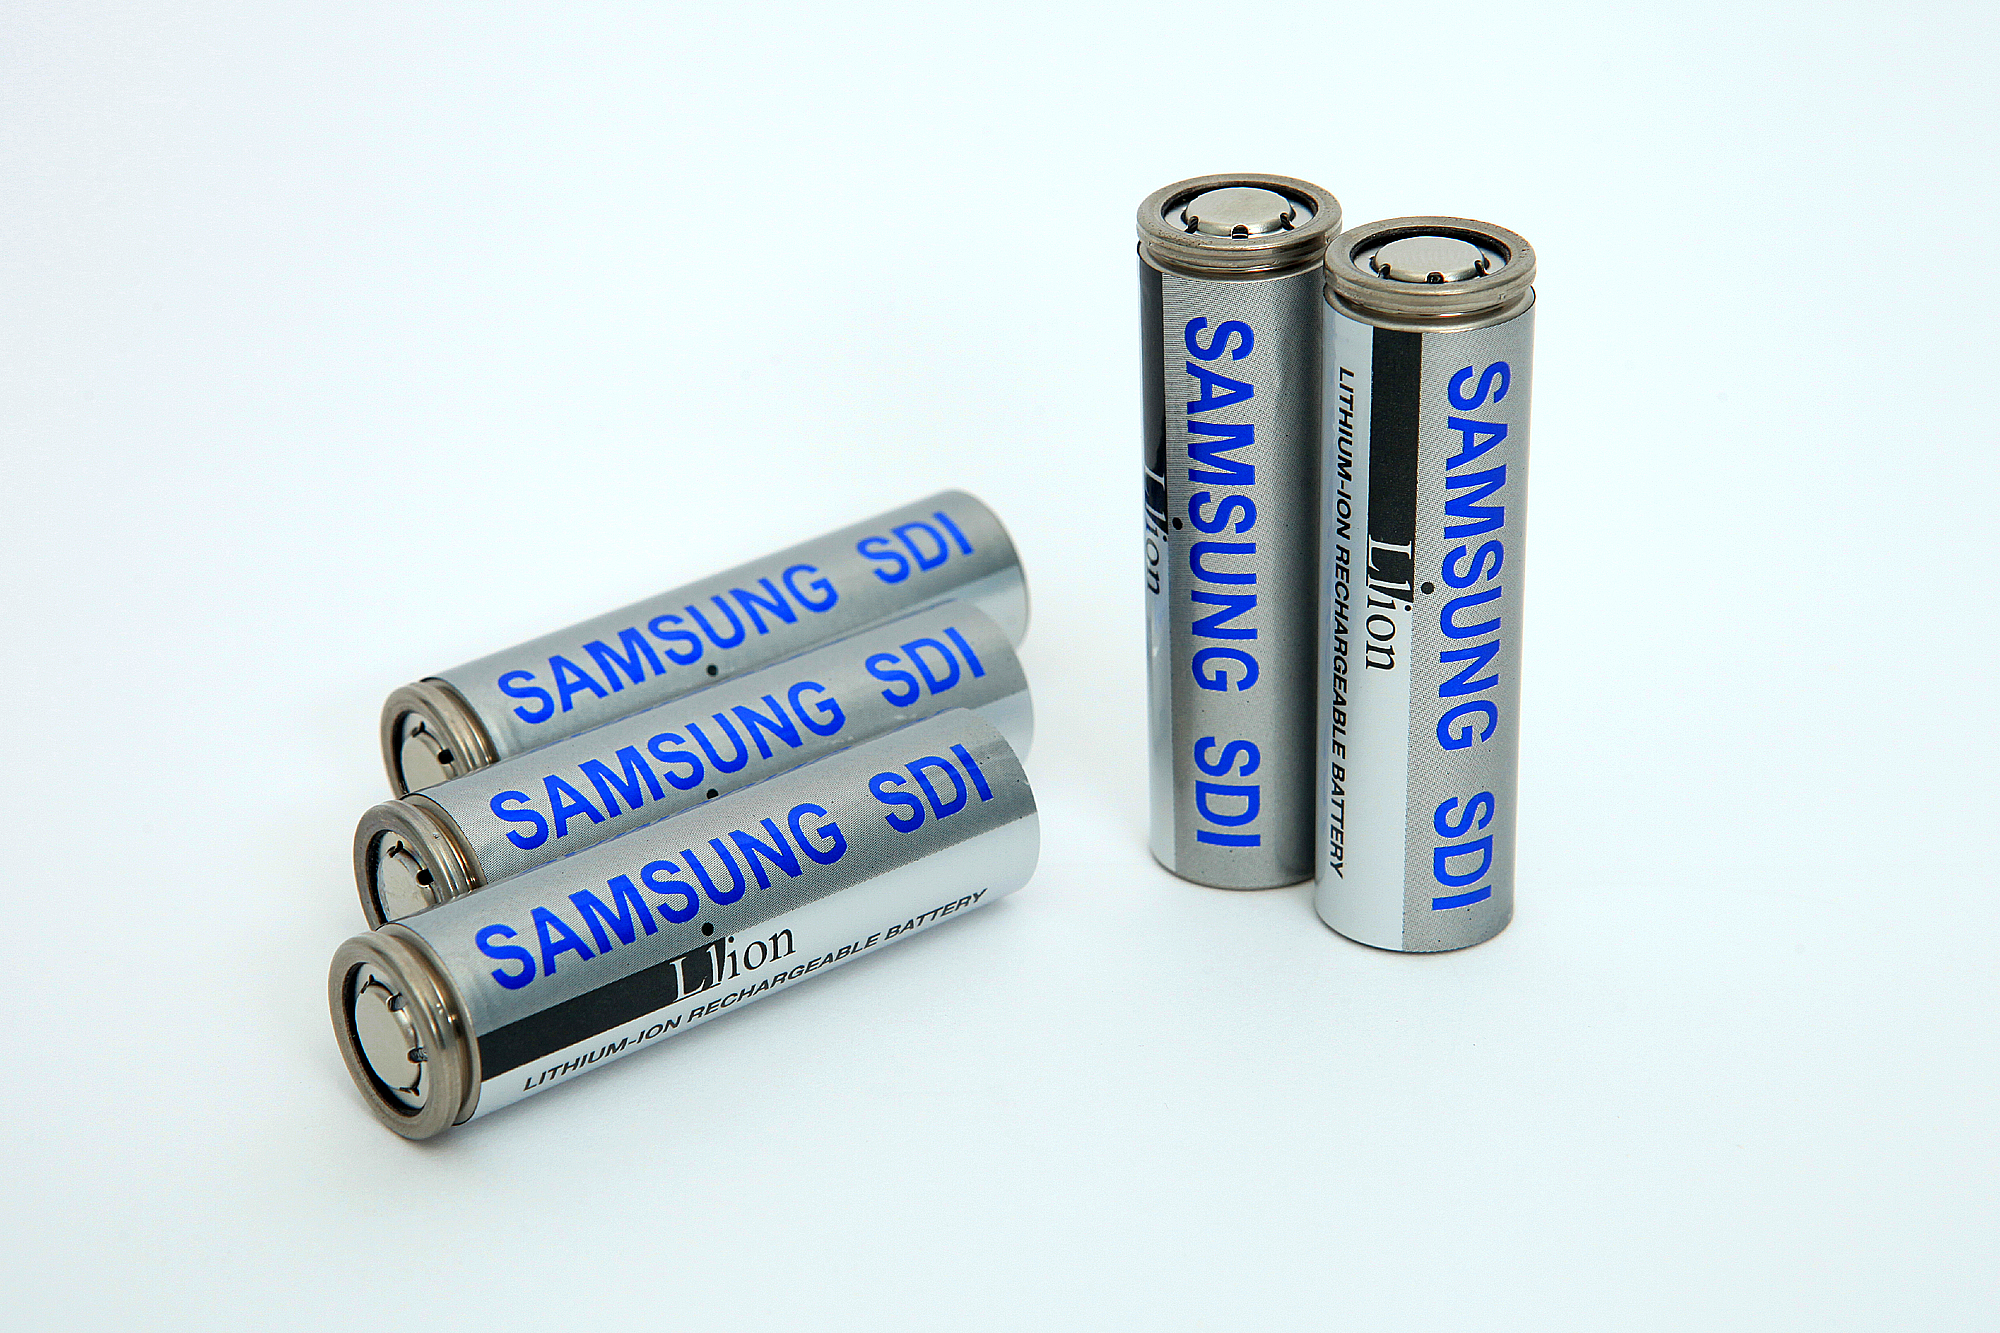 Battery производитель. Samsung li ion Battery. Литий-ионный аккумулятор. Samsung SDI. Призматики аккумуляторы.